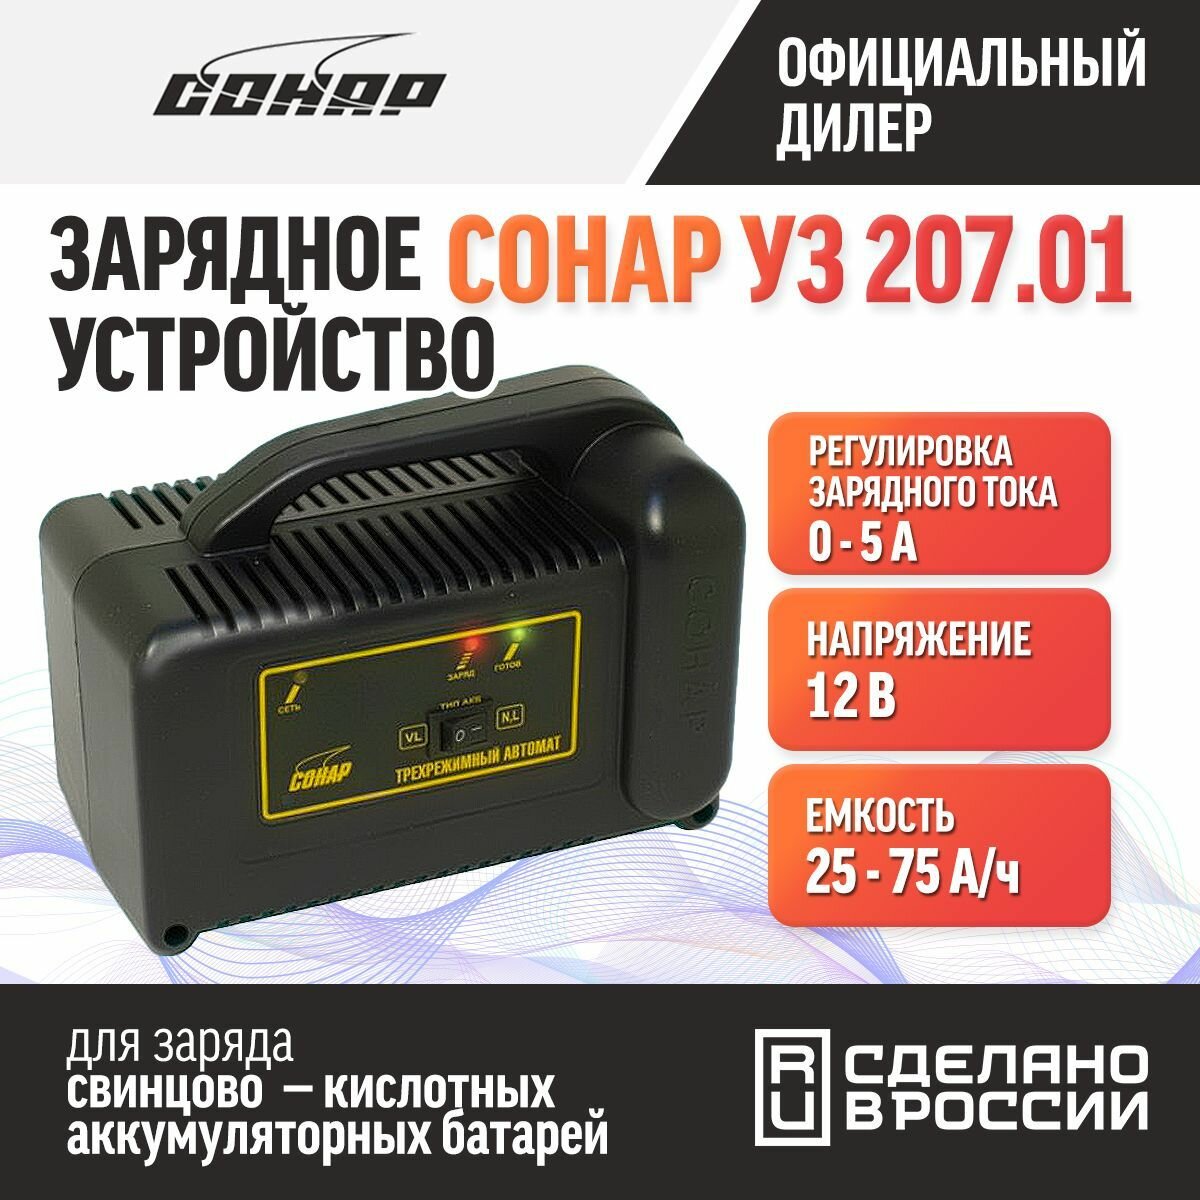 Зарядное устройство Сонар УЗ 20701